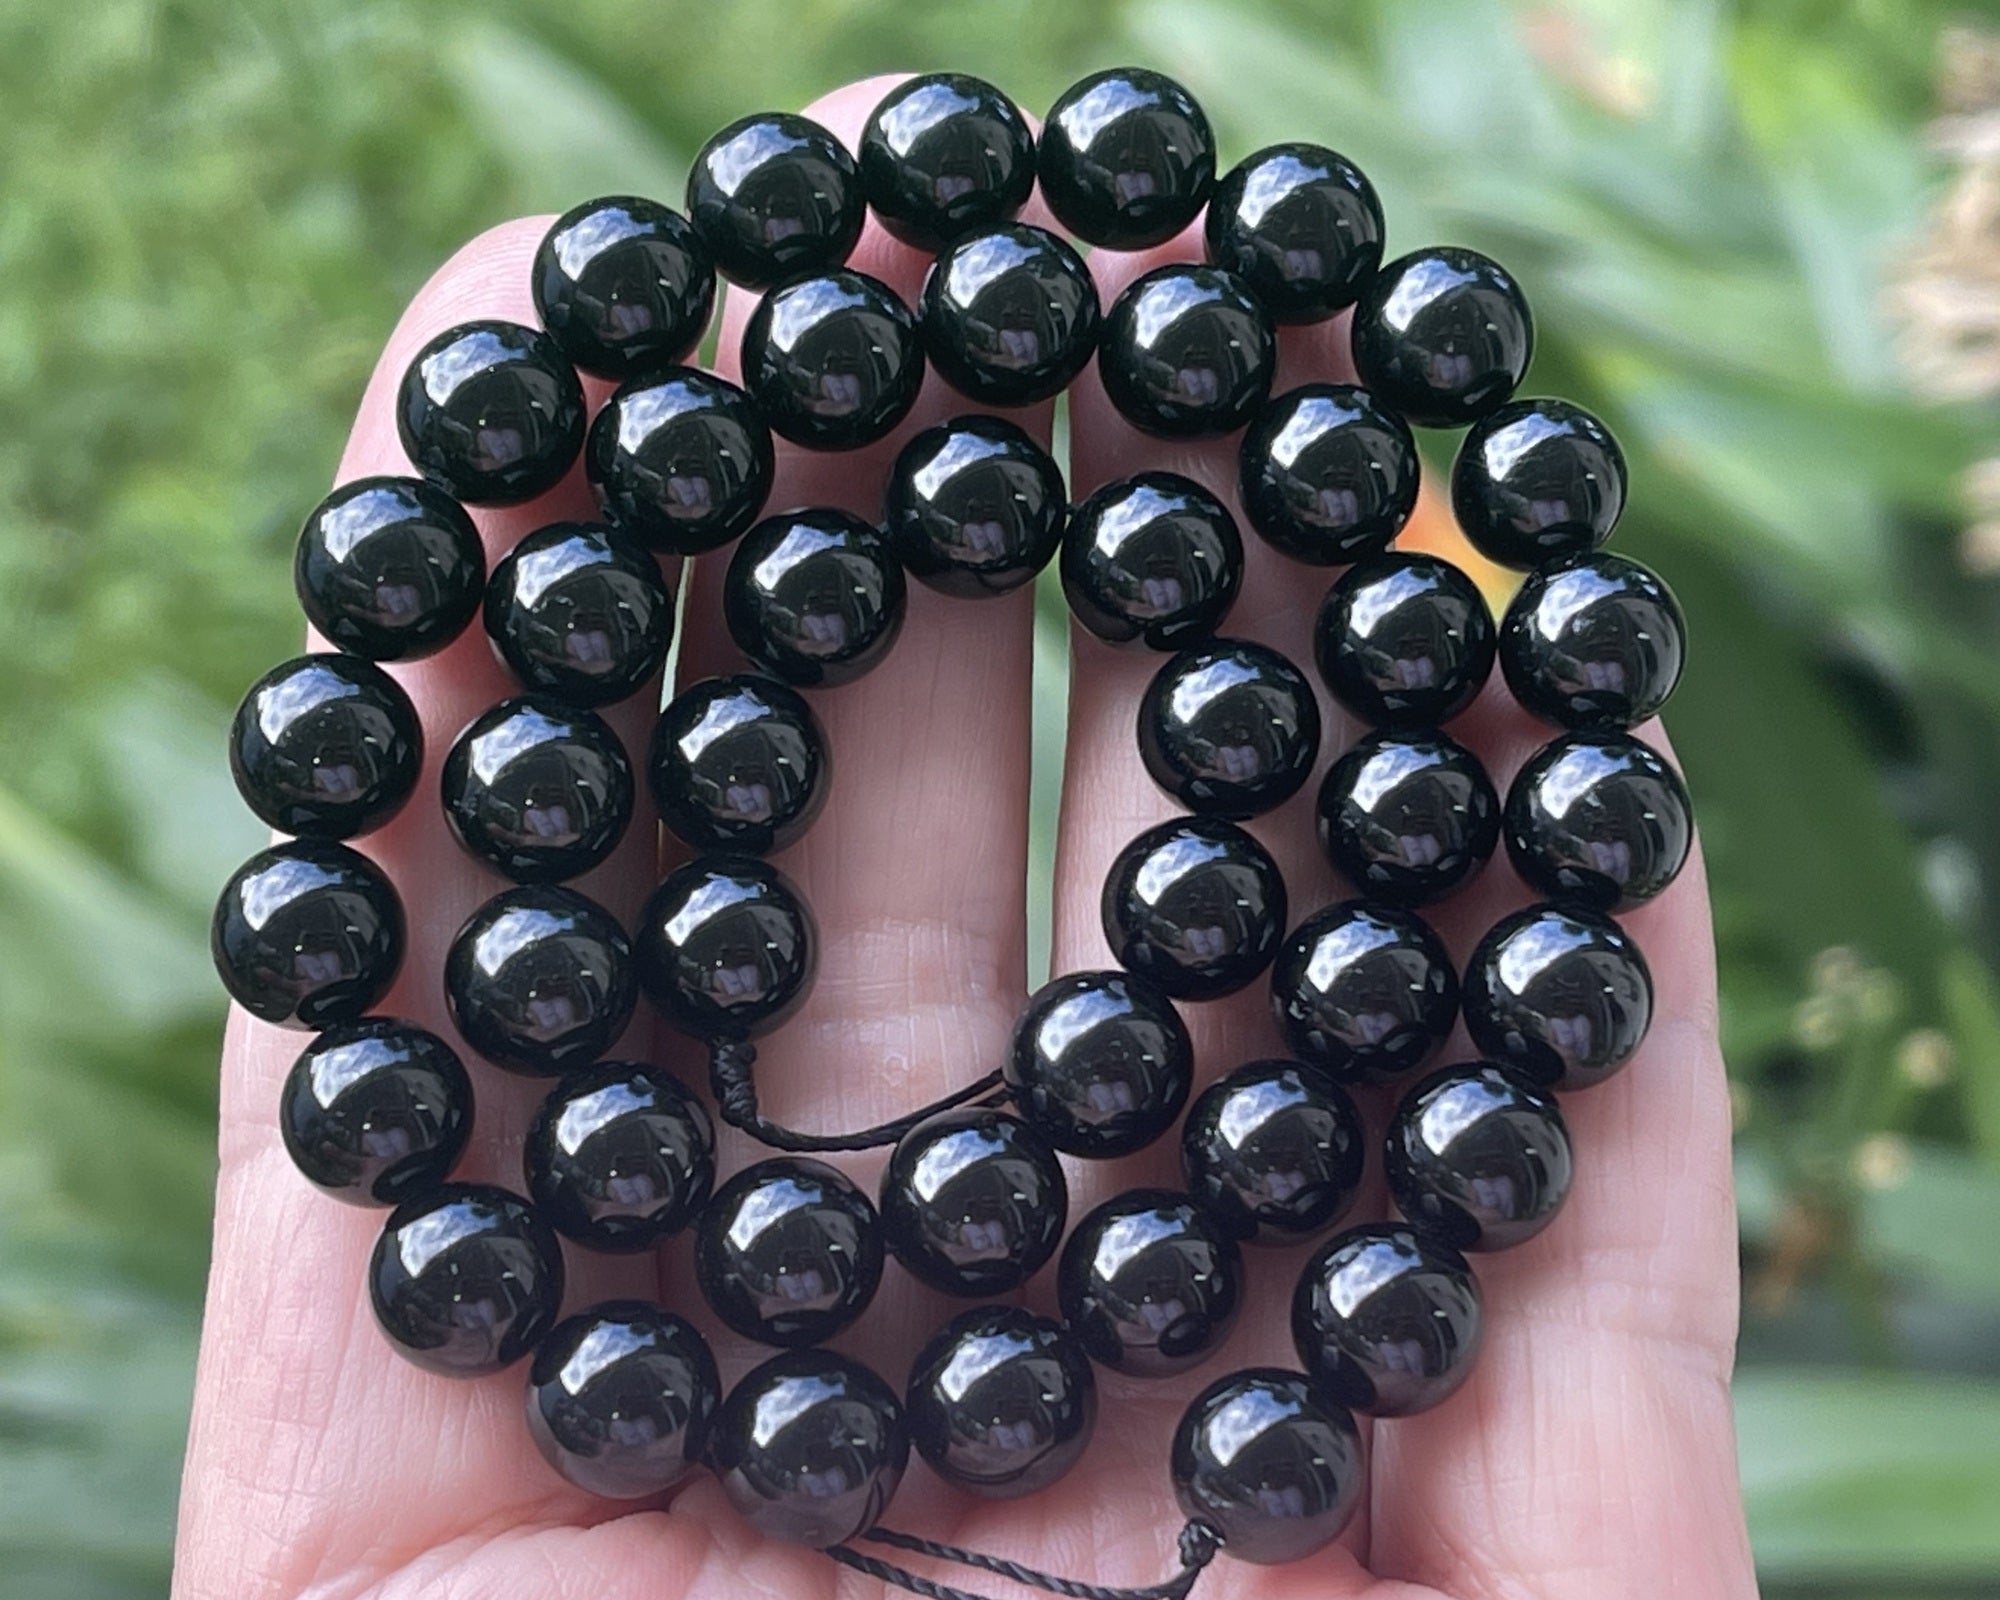 Black Tourmaline 8mm round natural gemstone beads 15.5" strand - Oz Beads 